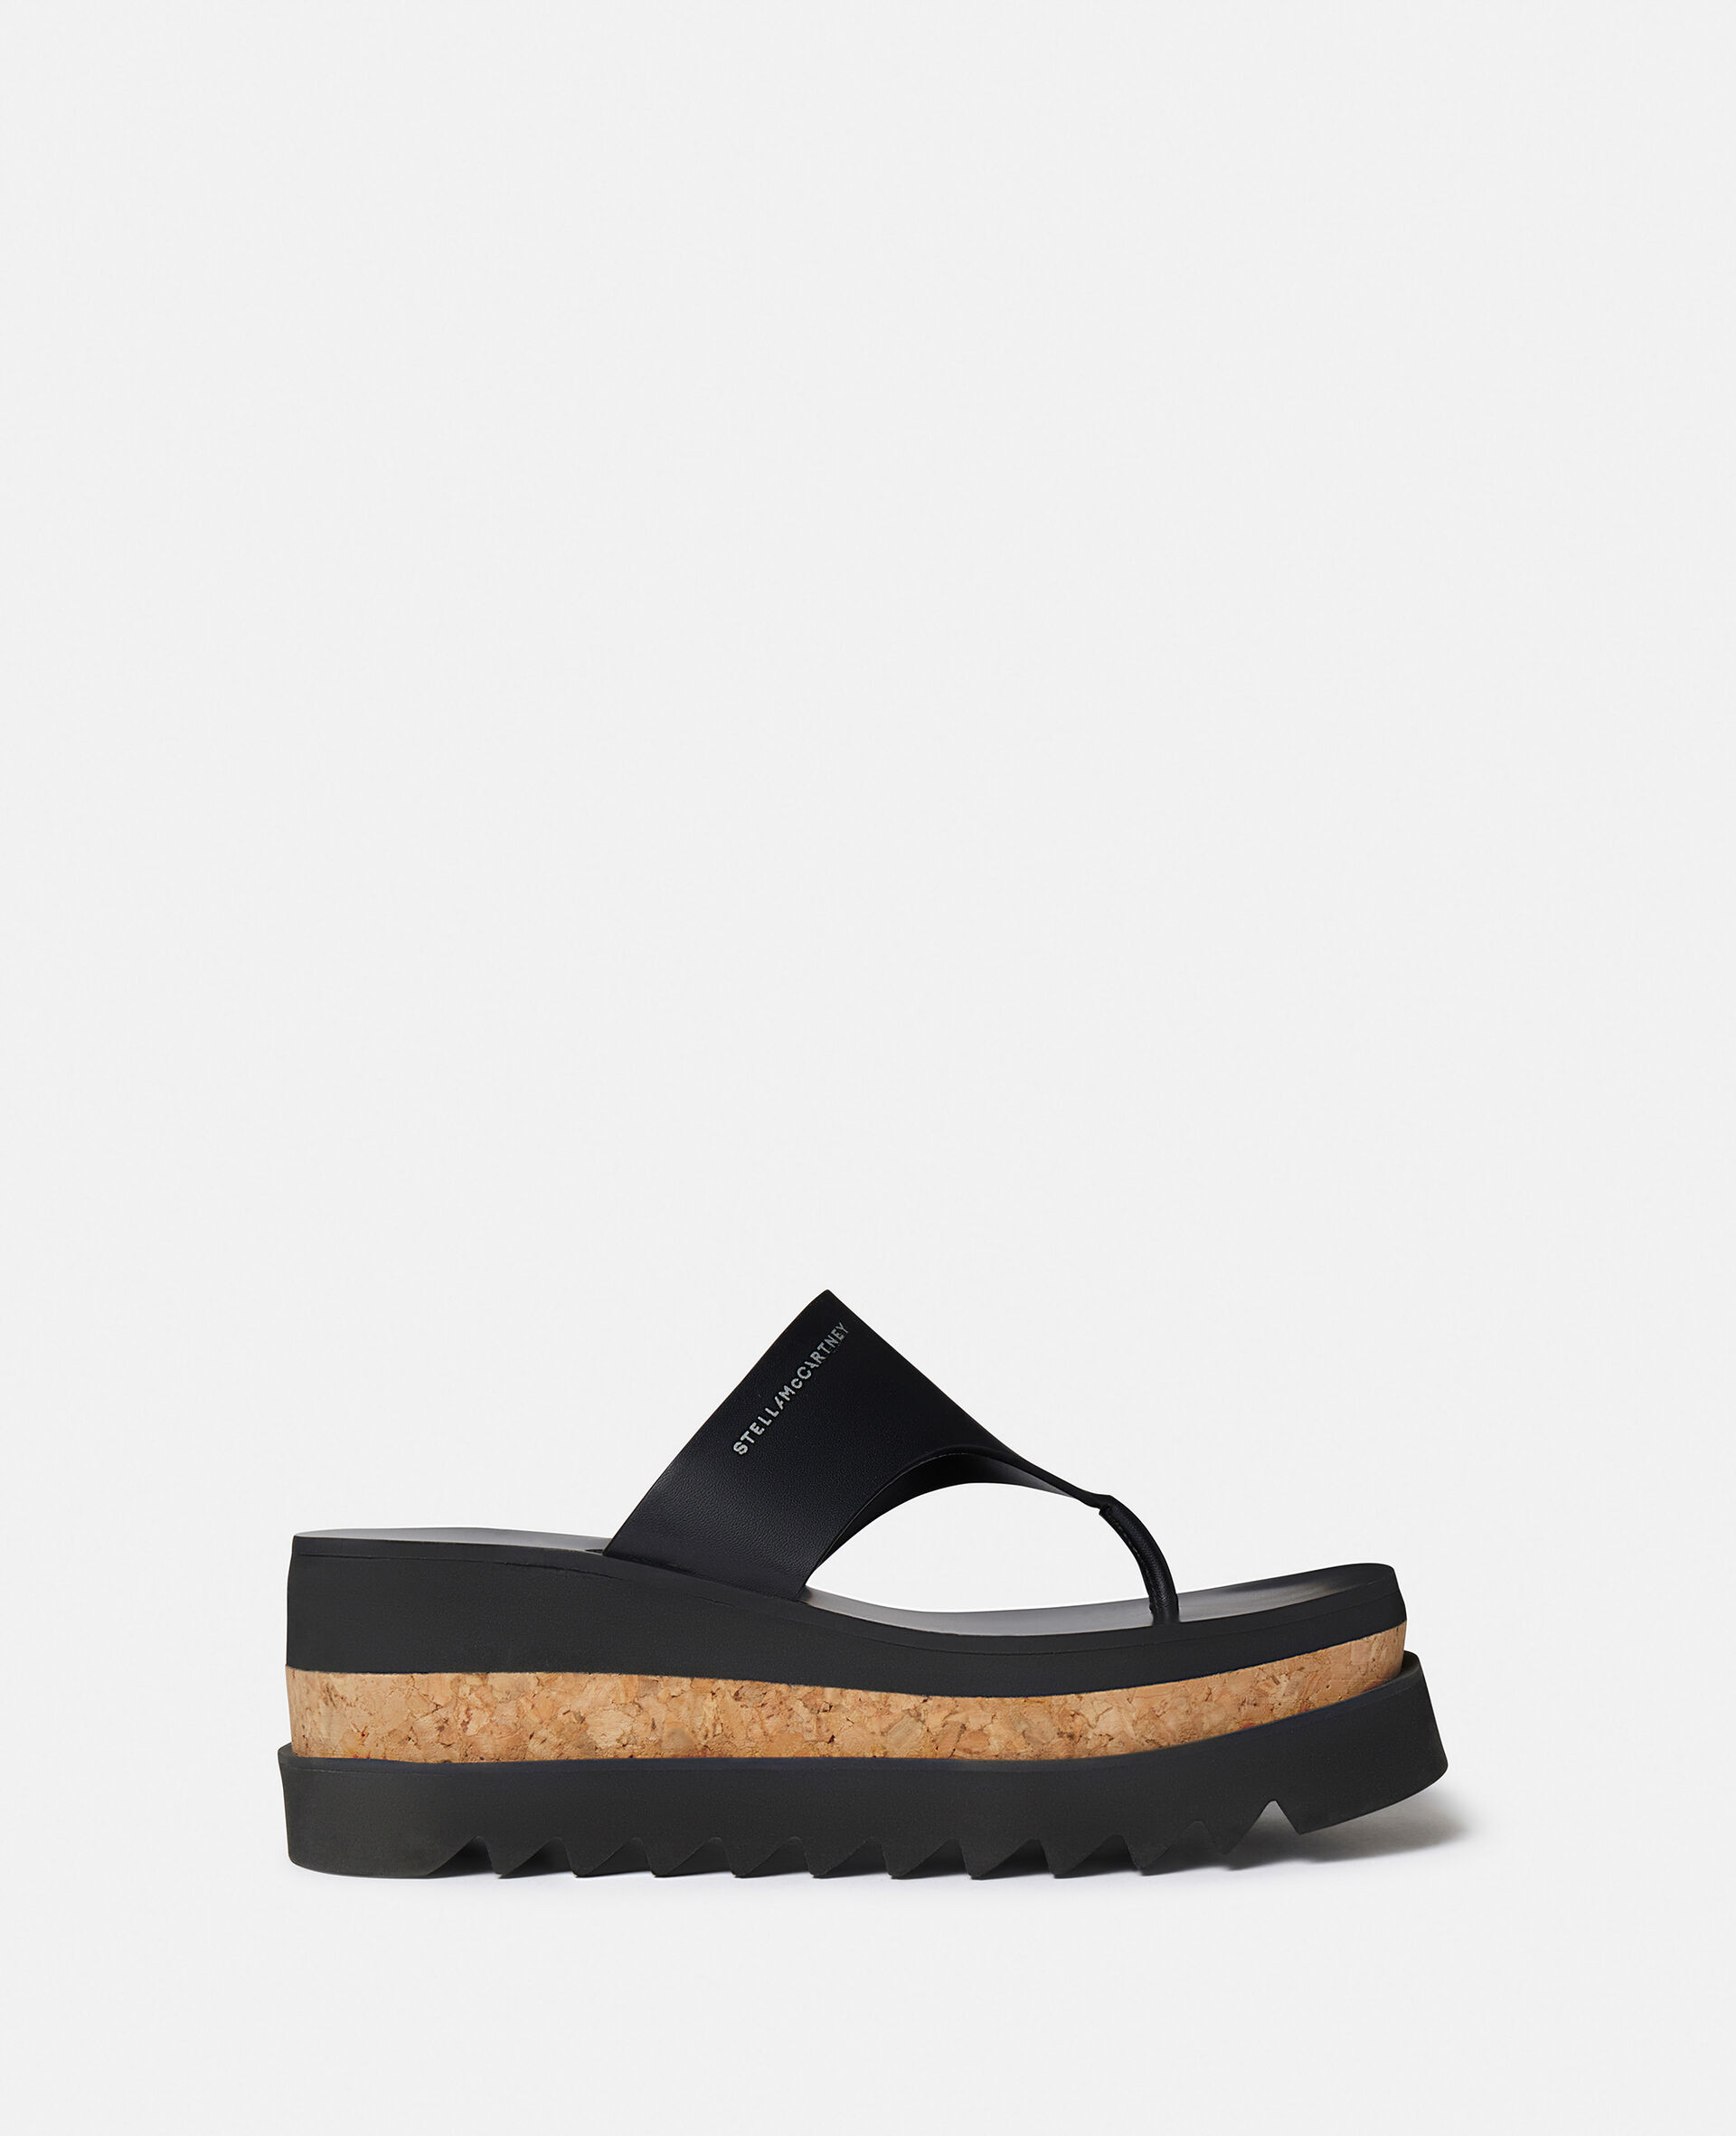 Sneak-Elyse Platform Thong Sandals-Black-large image number 0